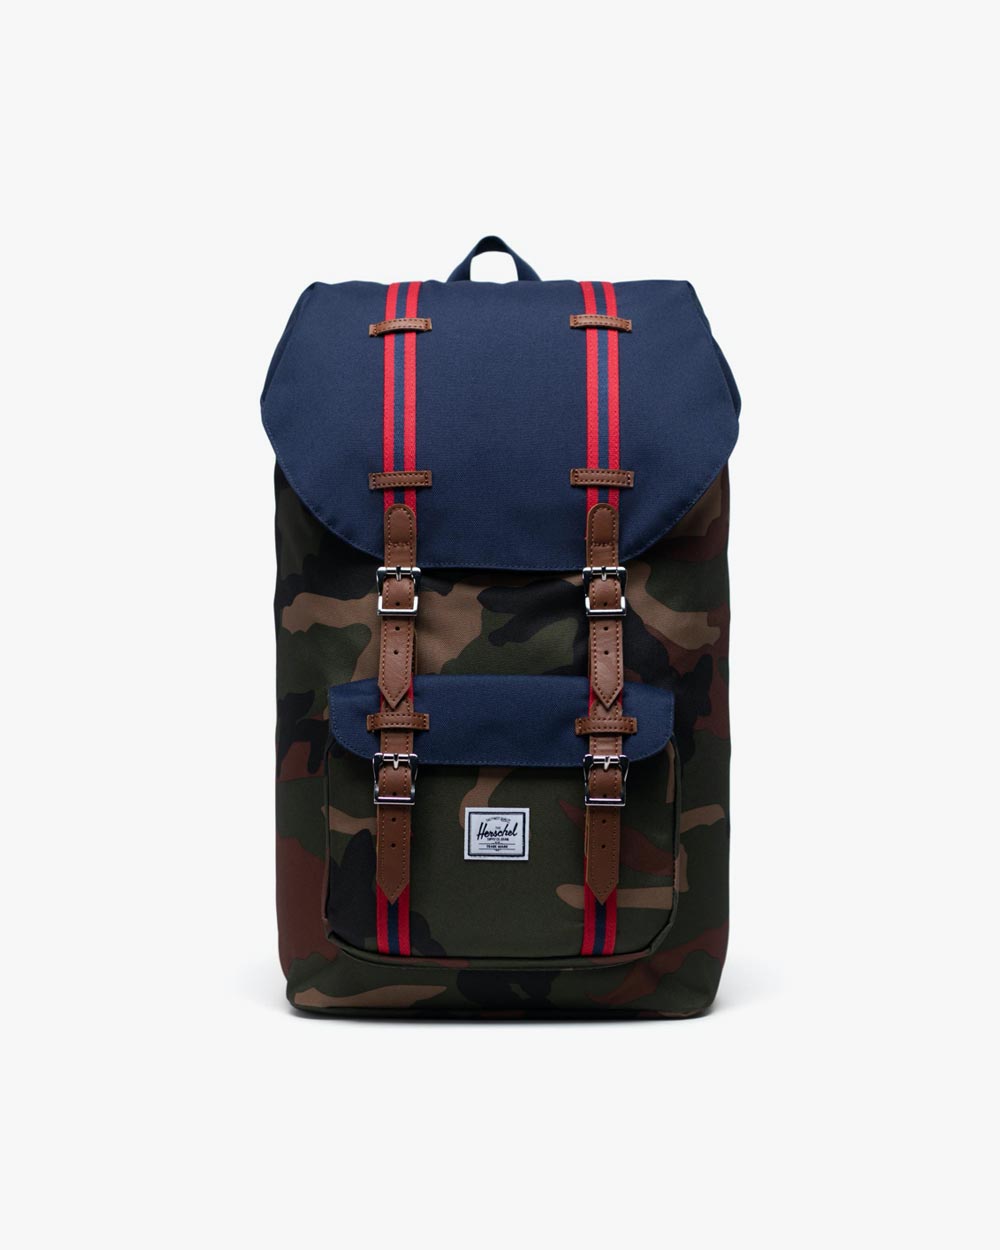 buy herschel backpack online